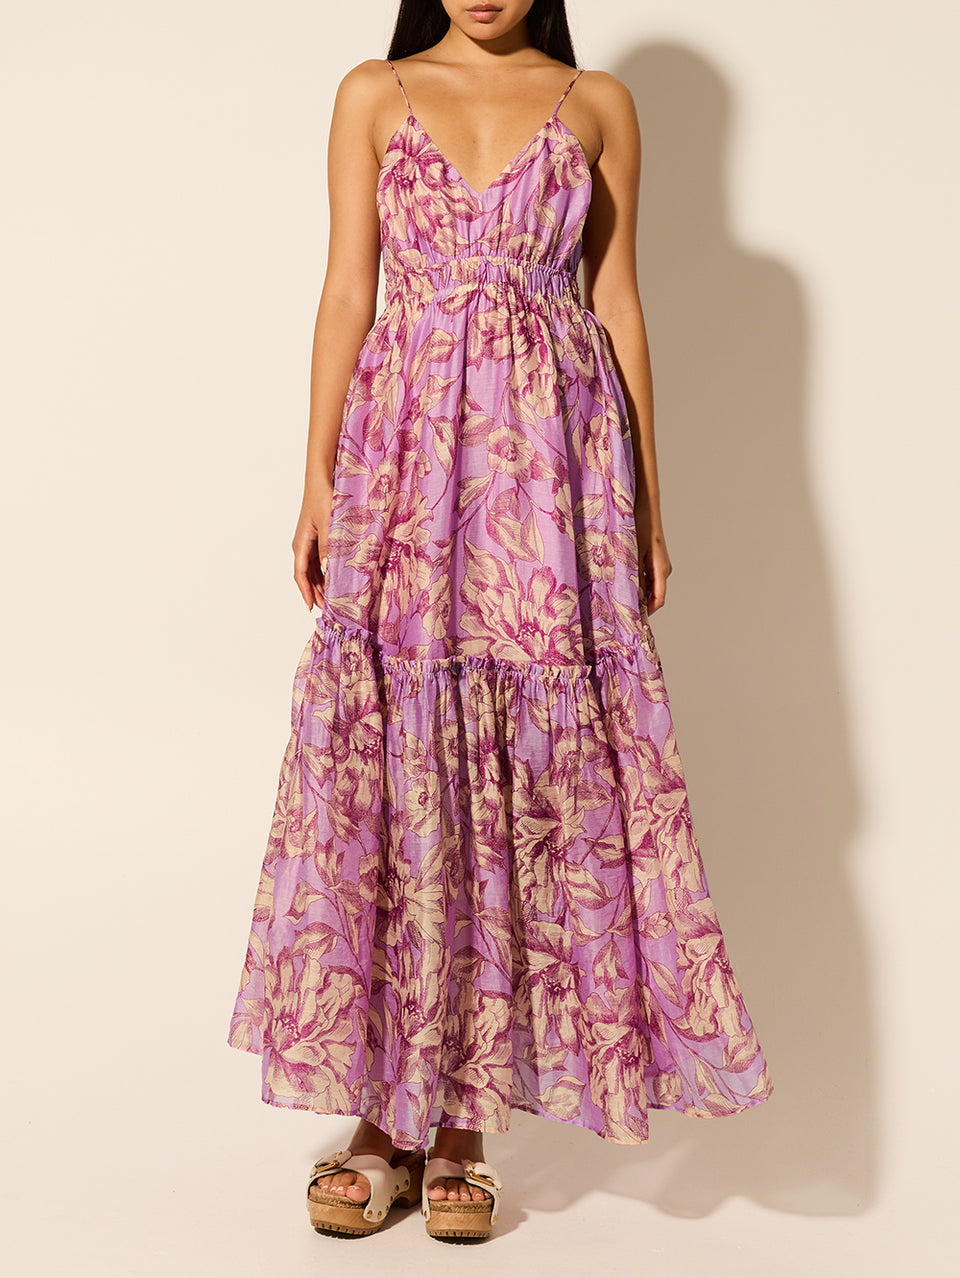 Reyna Maxi Dress KIVARI | Model wears purple floral maxi dress 